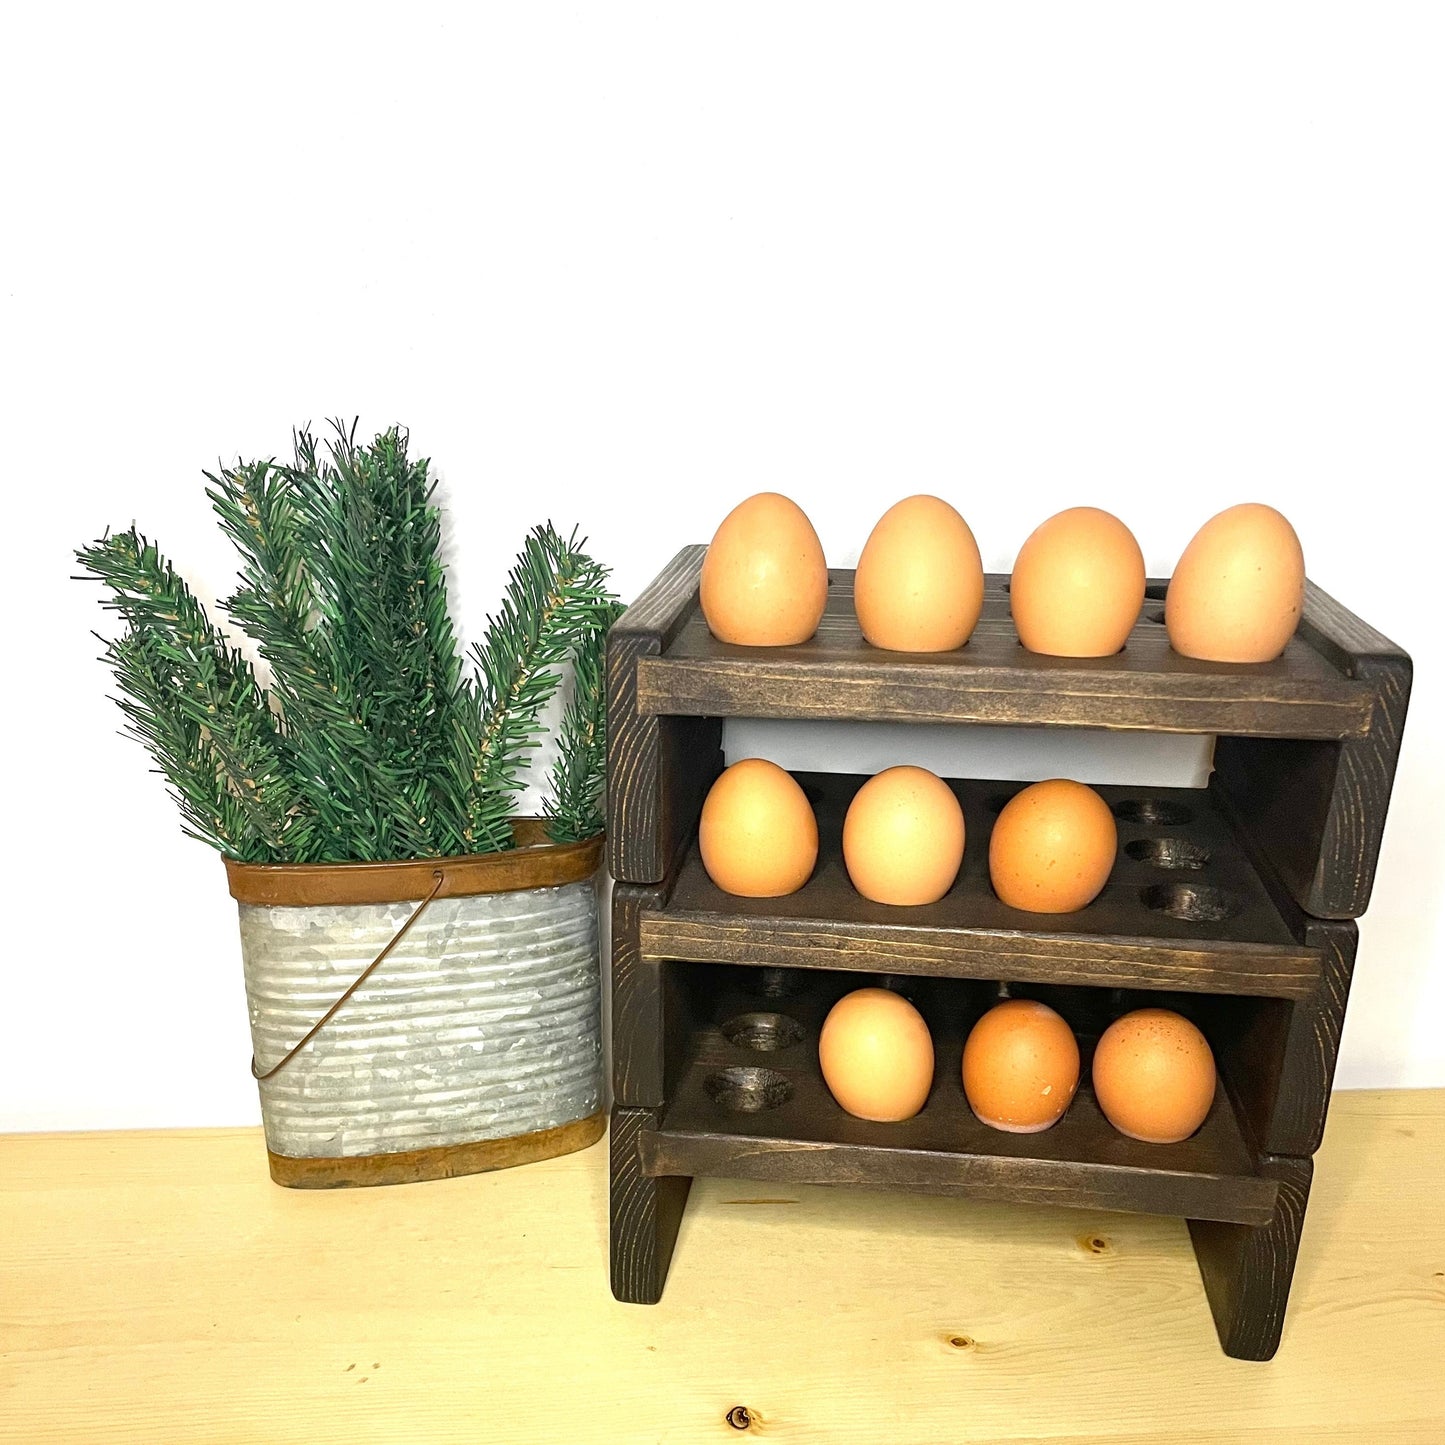 Wooden Egg Holder Countertop Stackable Egg Rack for Fresh Eggs 